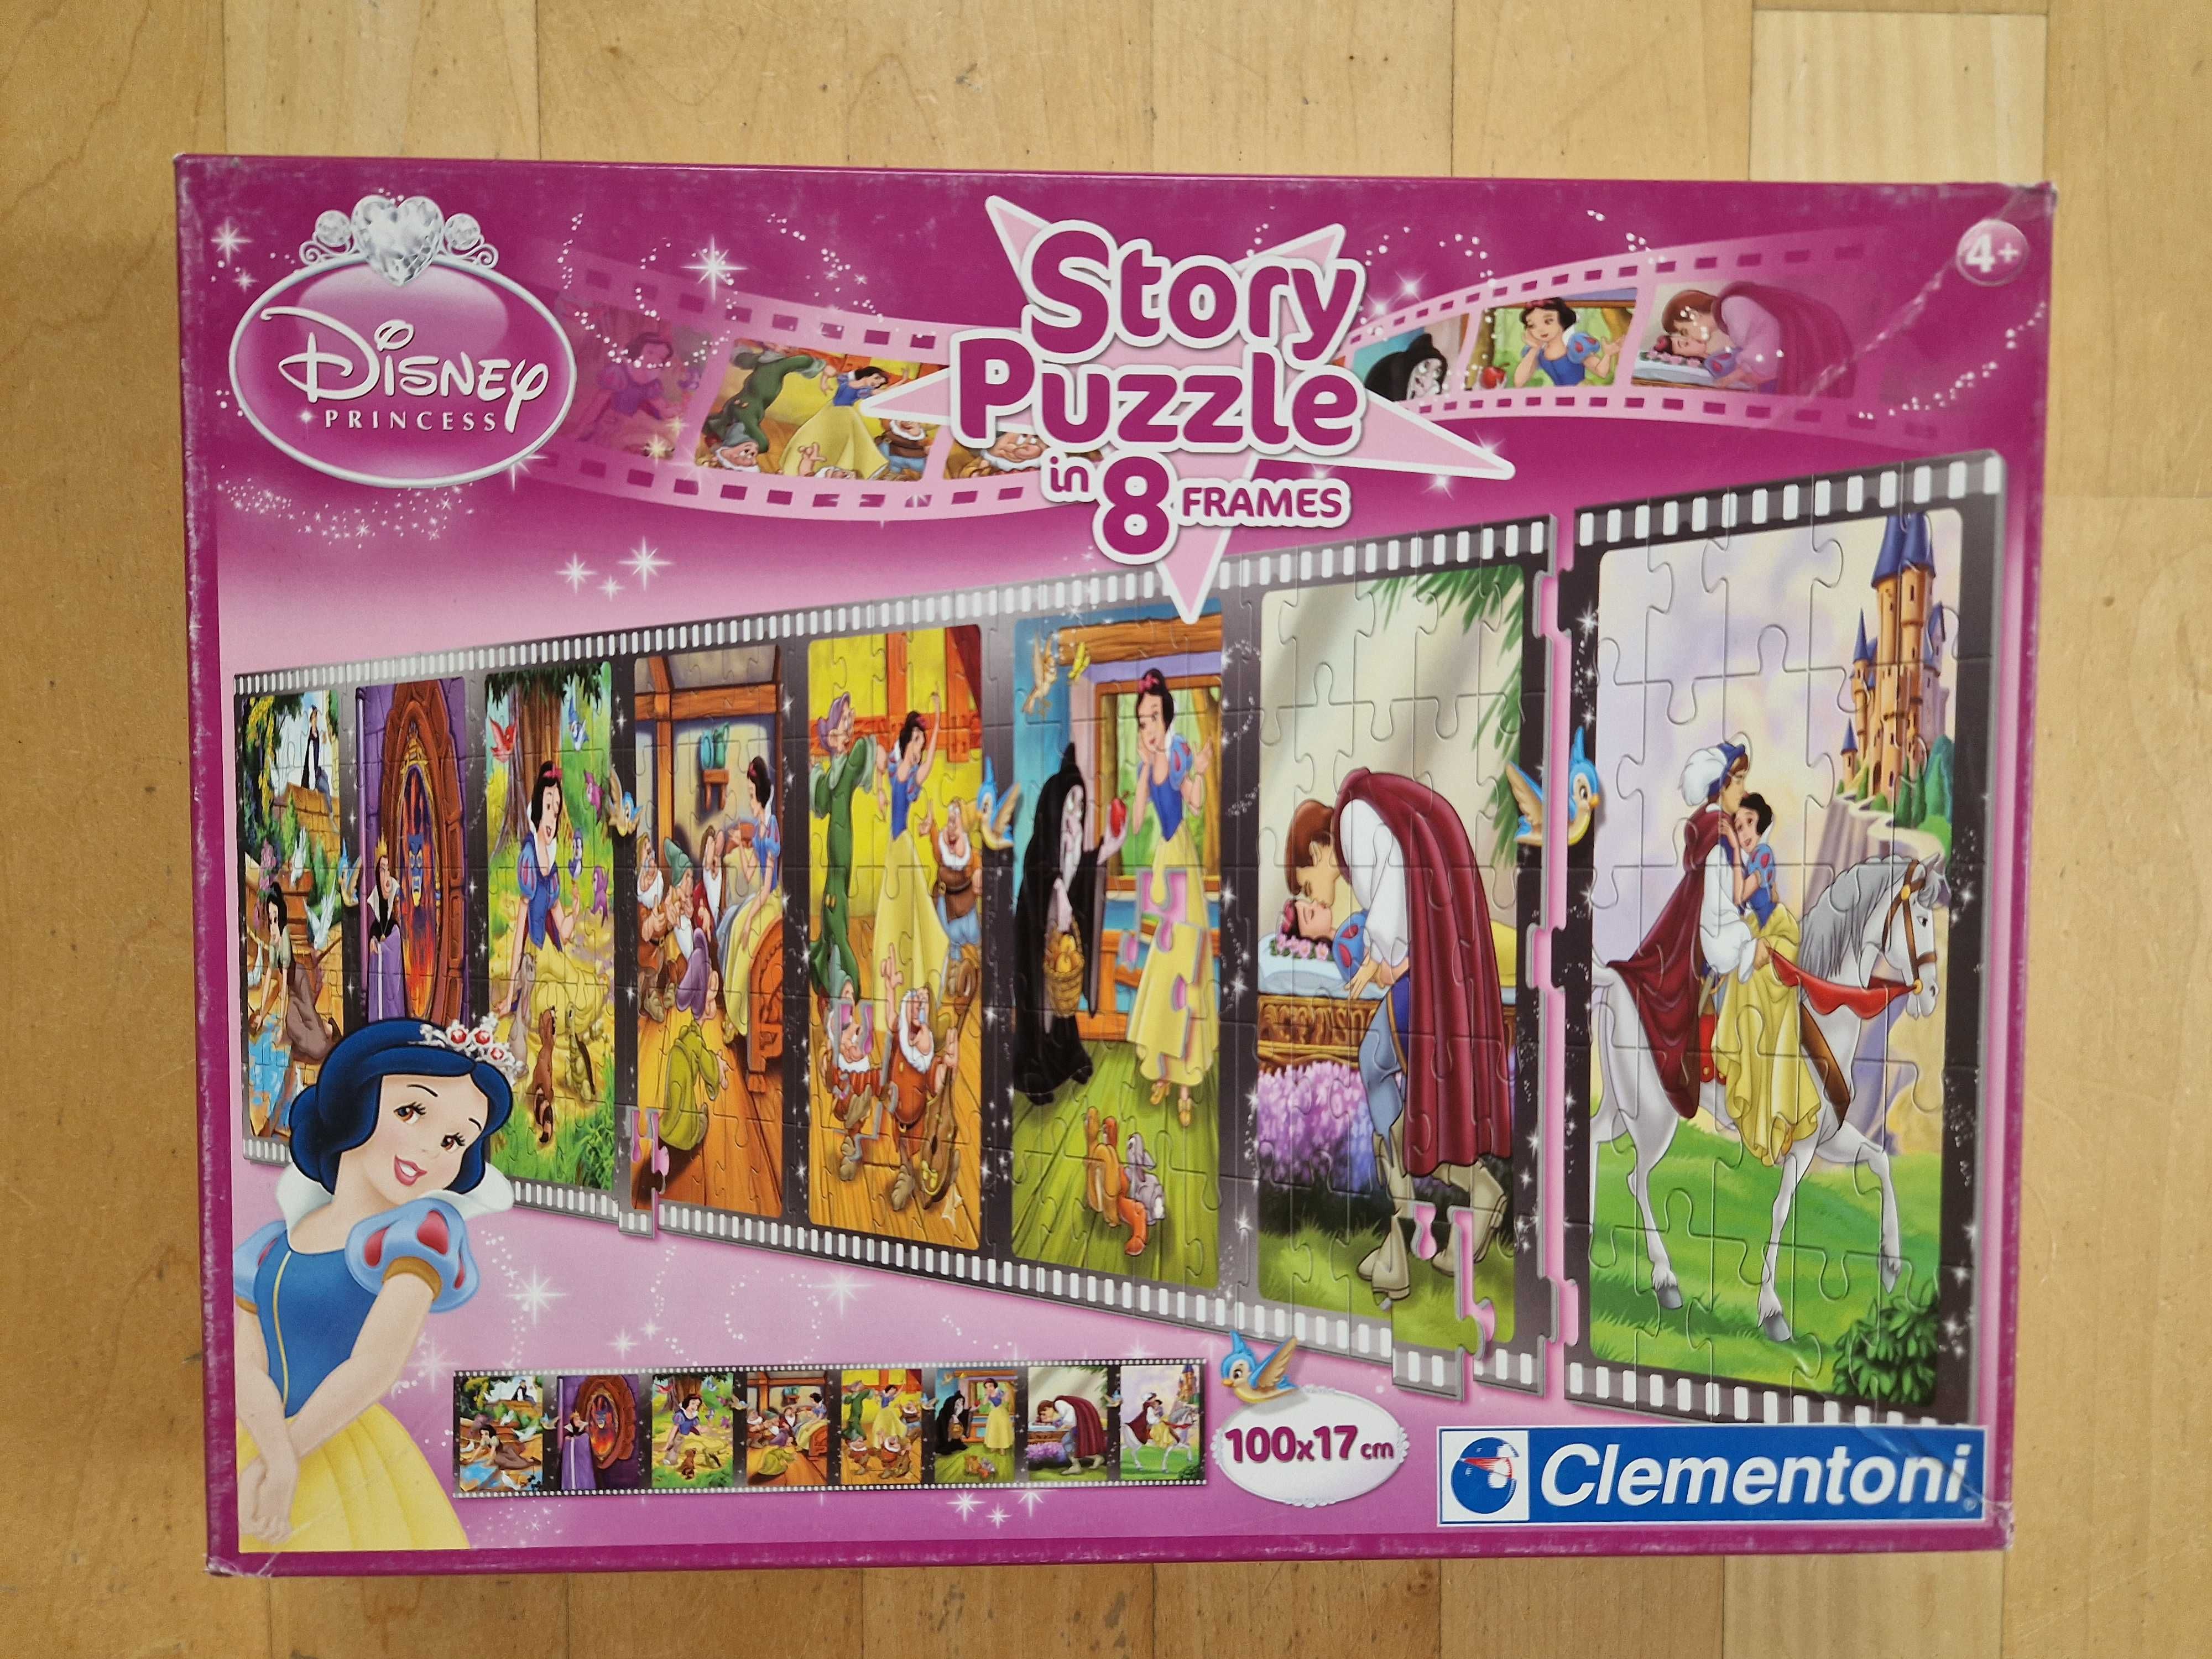 Clementoni Królewna Śnieżka story puzzle 8 x 25 cm   4+